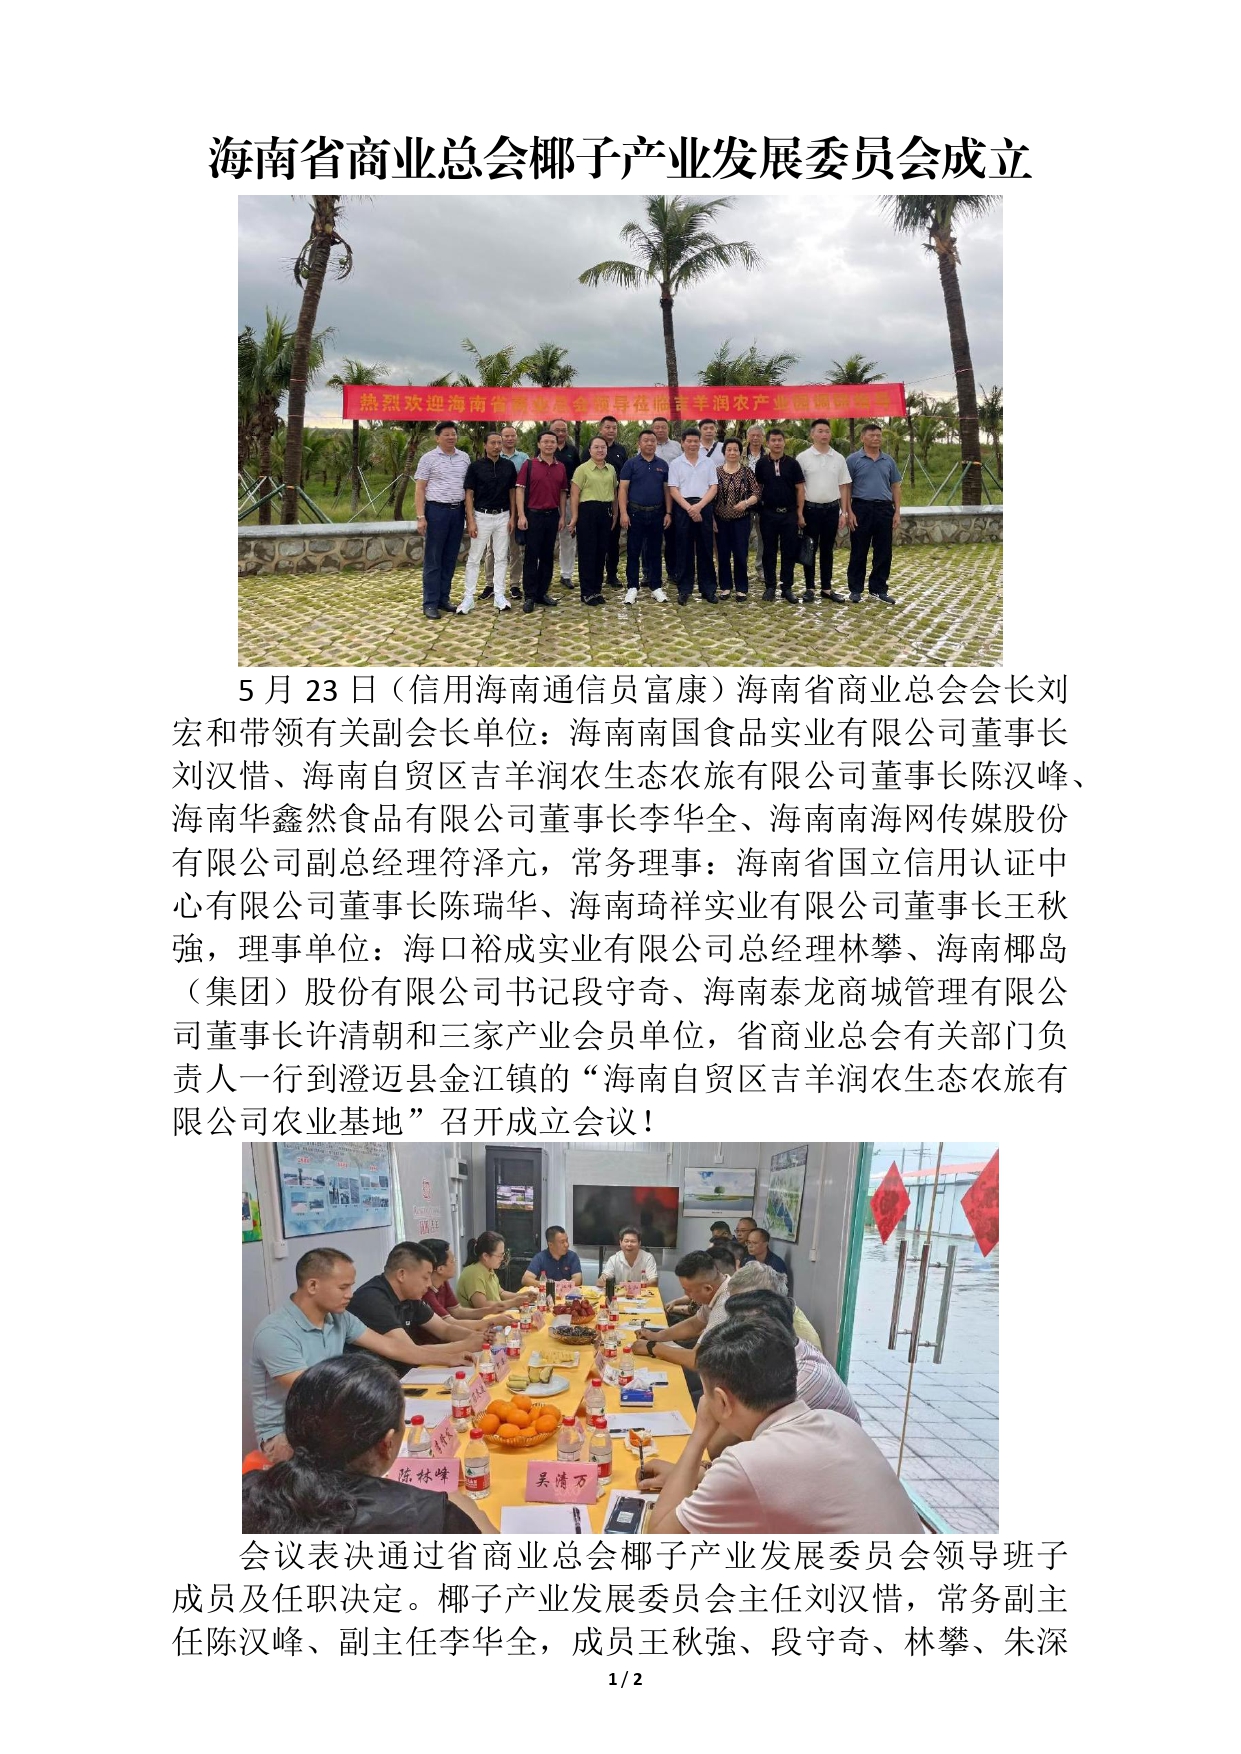 海南省商业总会椰子产业发展委员会成立(1)(1)(1)_page-0001.jpg